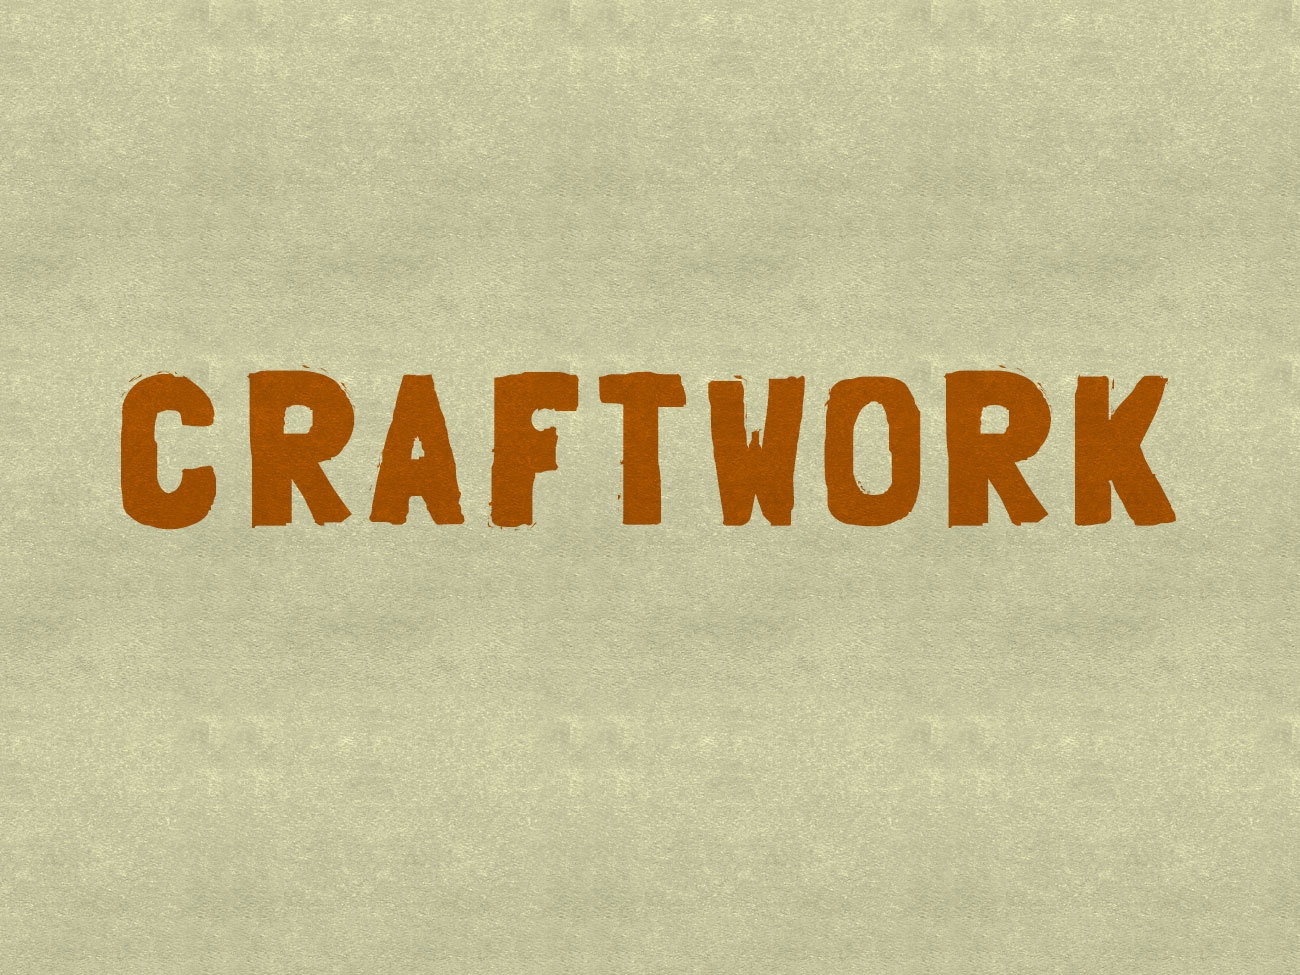 Craftwork Font Design - Free Download